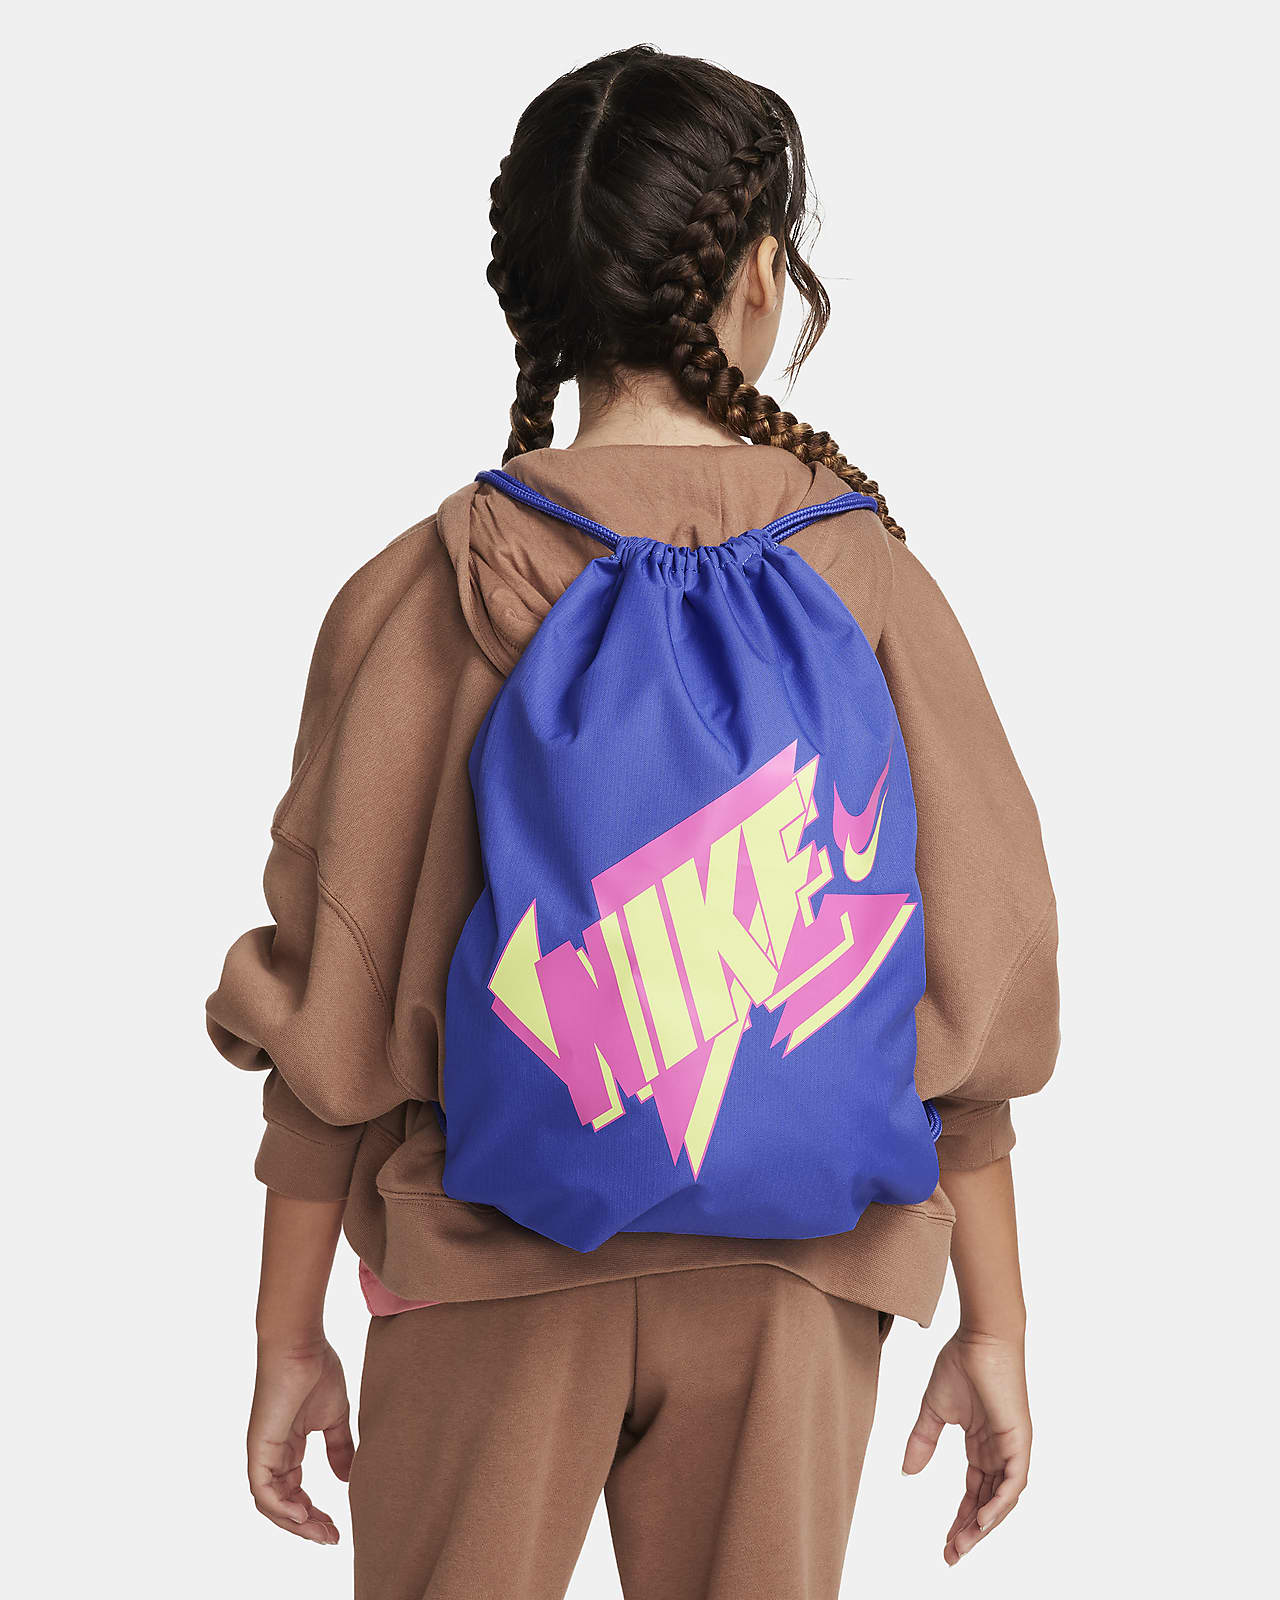 Nike Kids' 12L Drawstring Bag $7.48 + Free Shipping on $50+